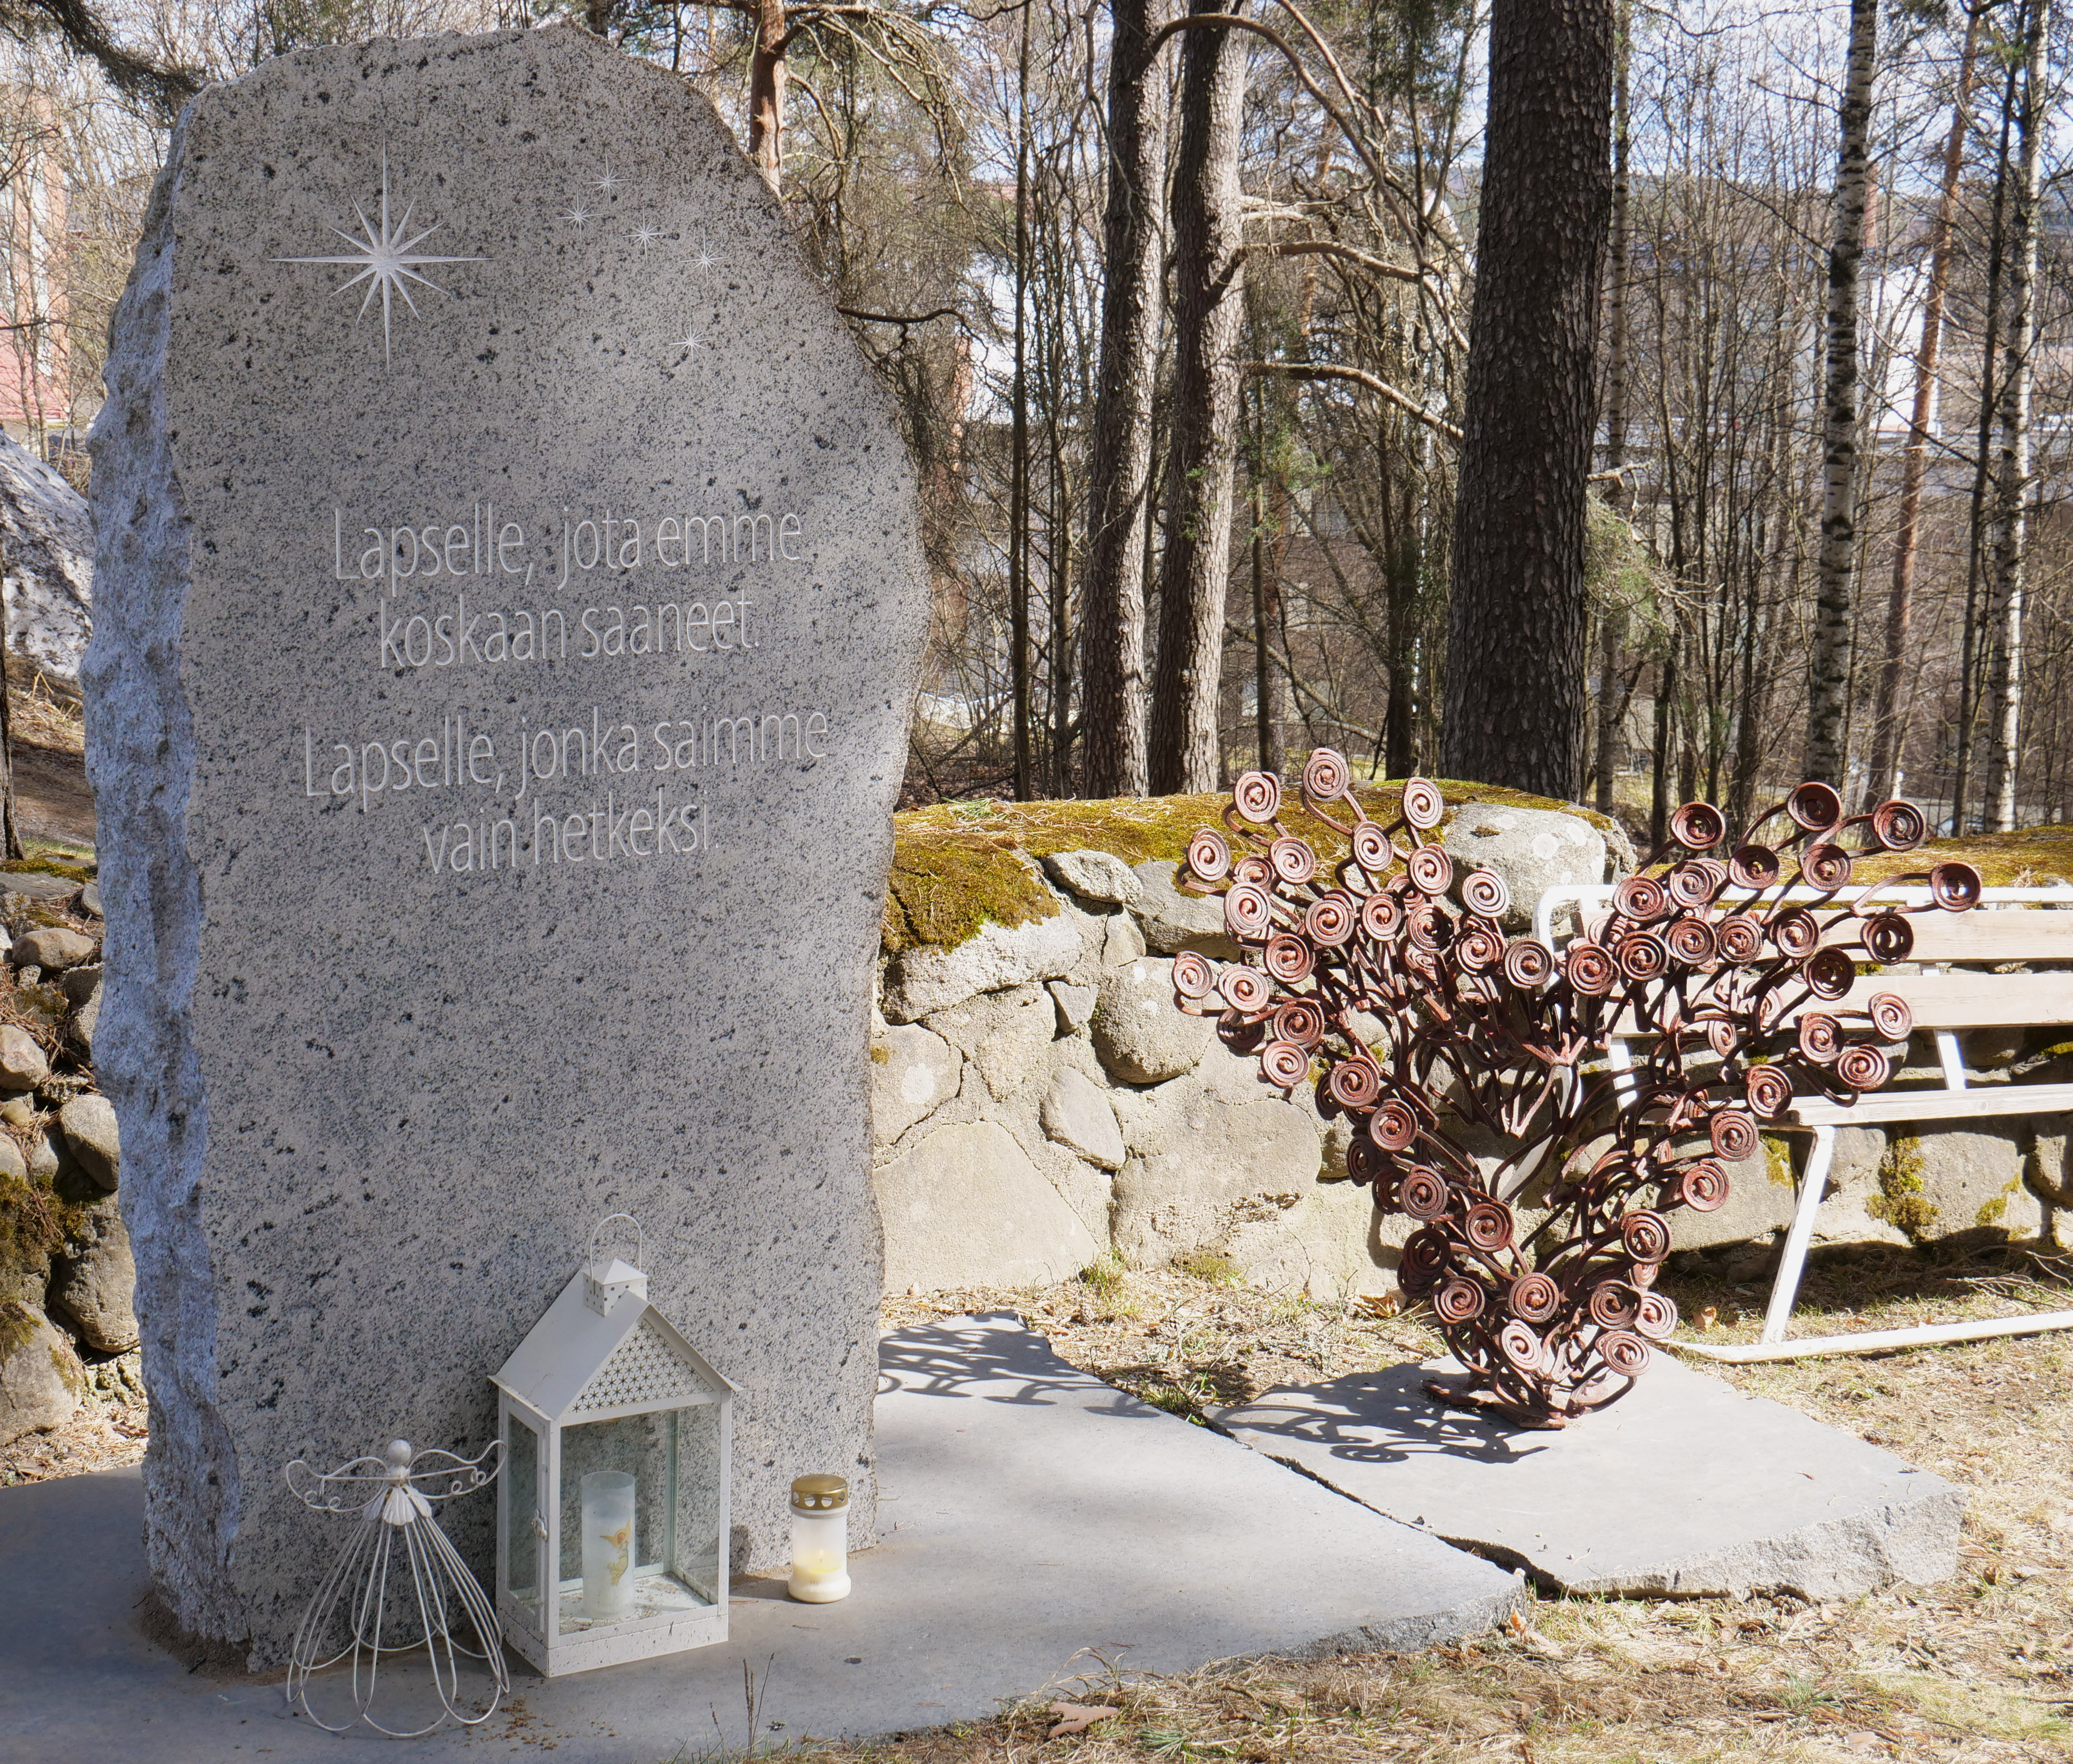 Tyhjän sylin muistelupaikka sijaitsee Talvisalon hautausmaalla, siunauskappelin läheisyydessä.